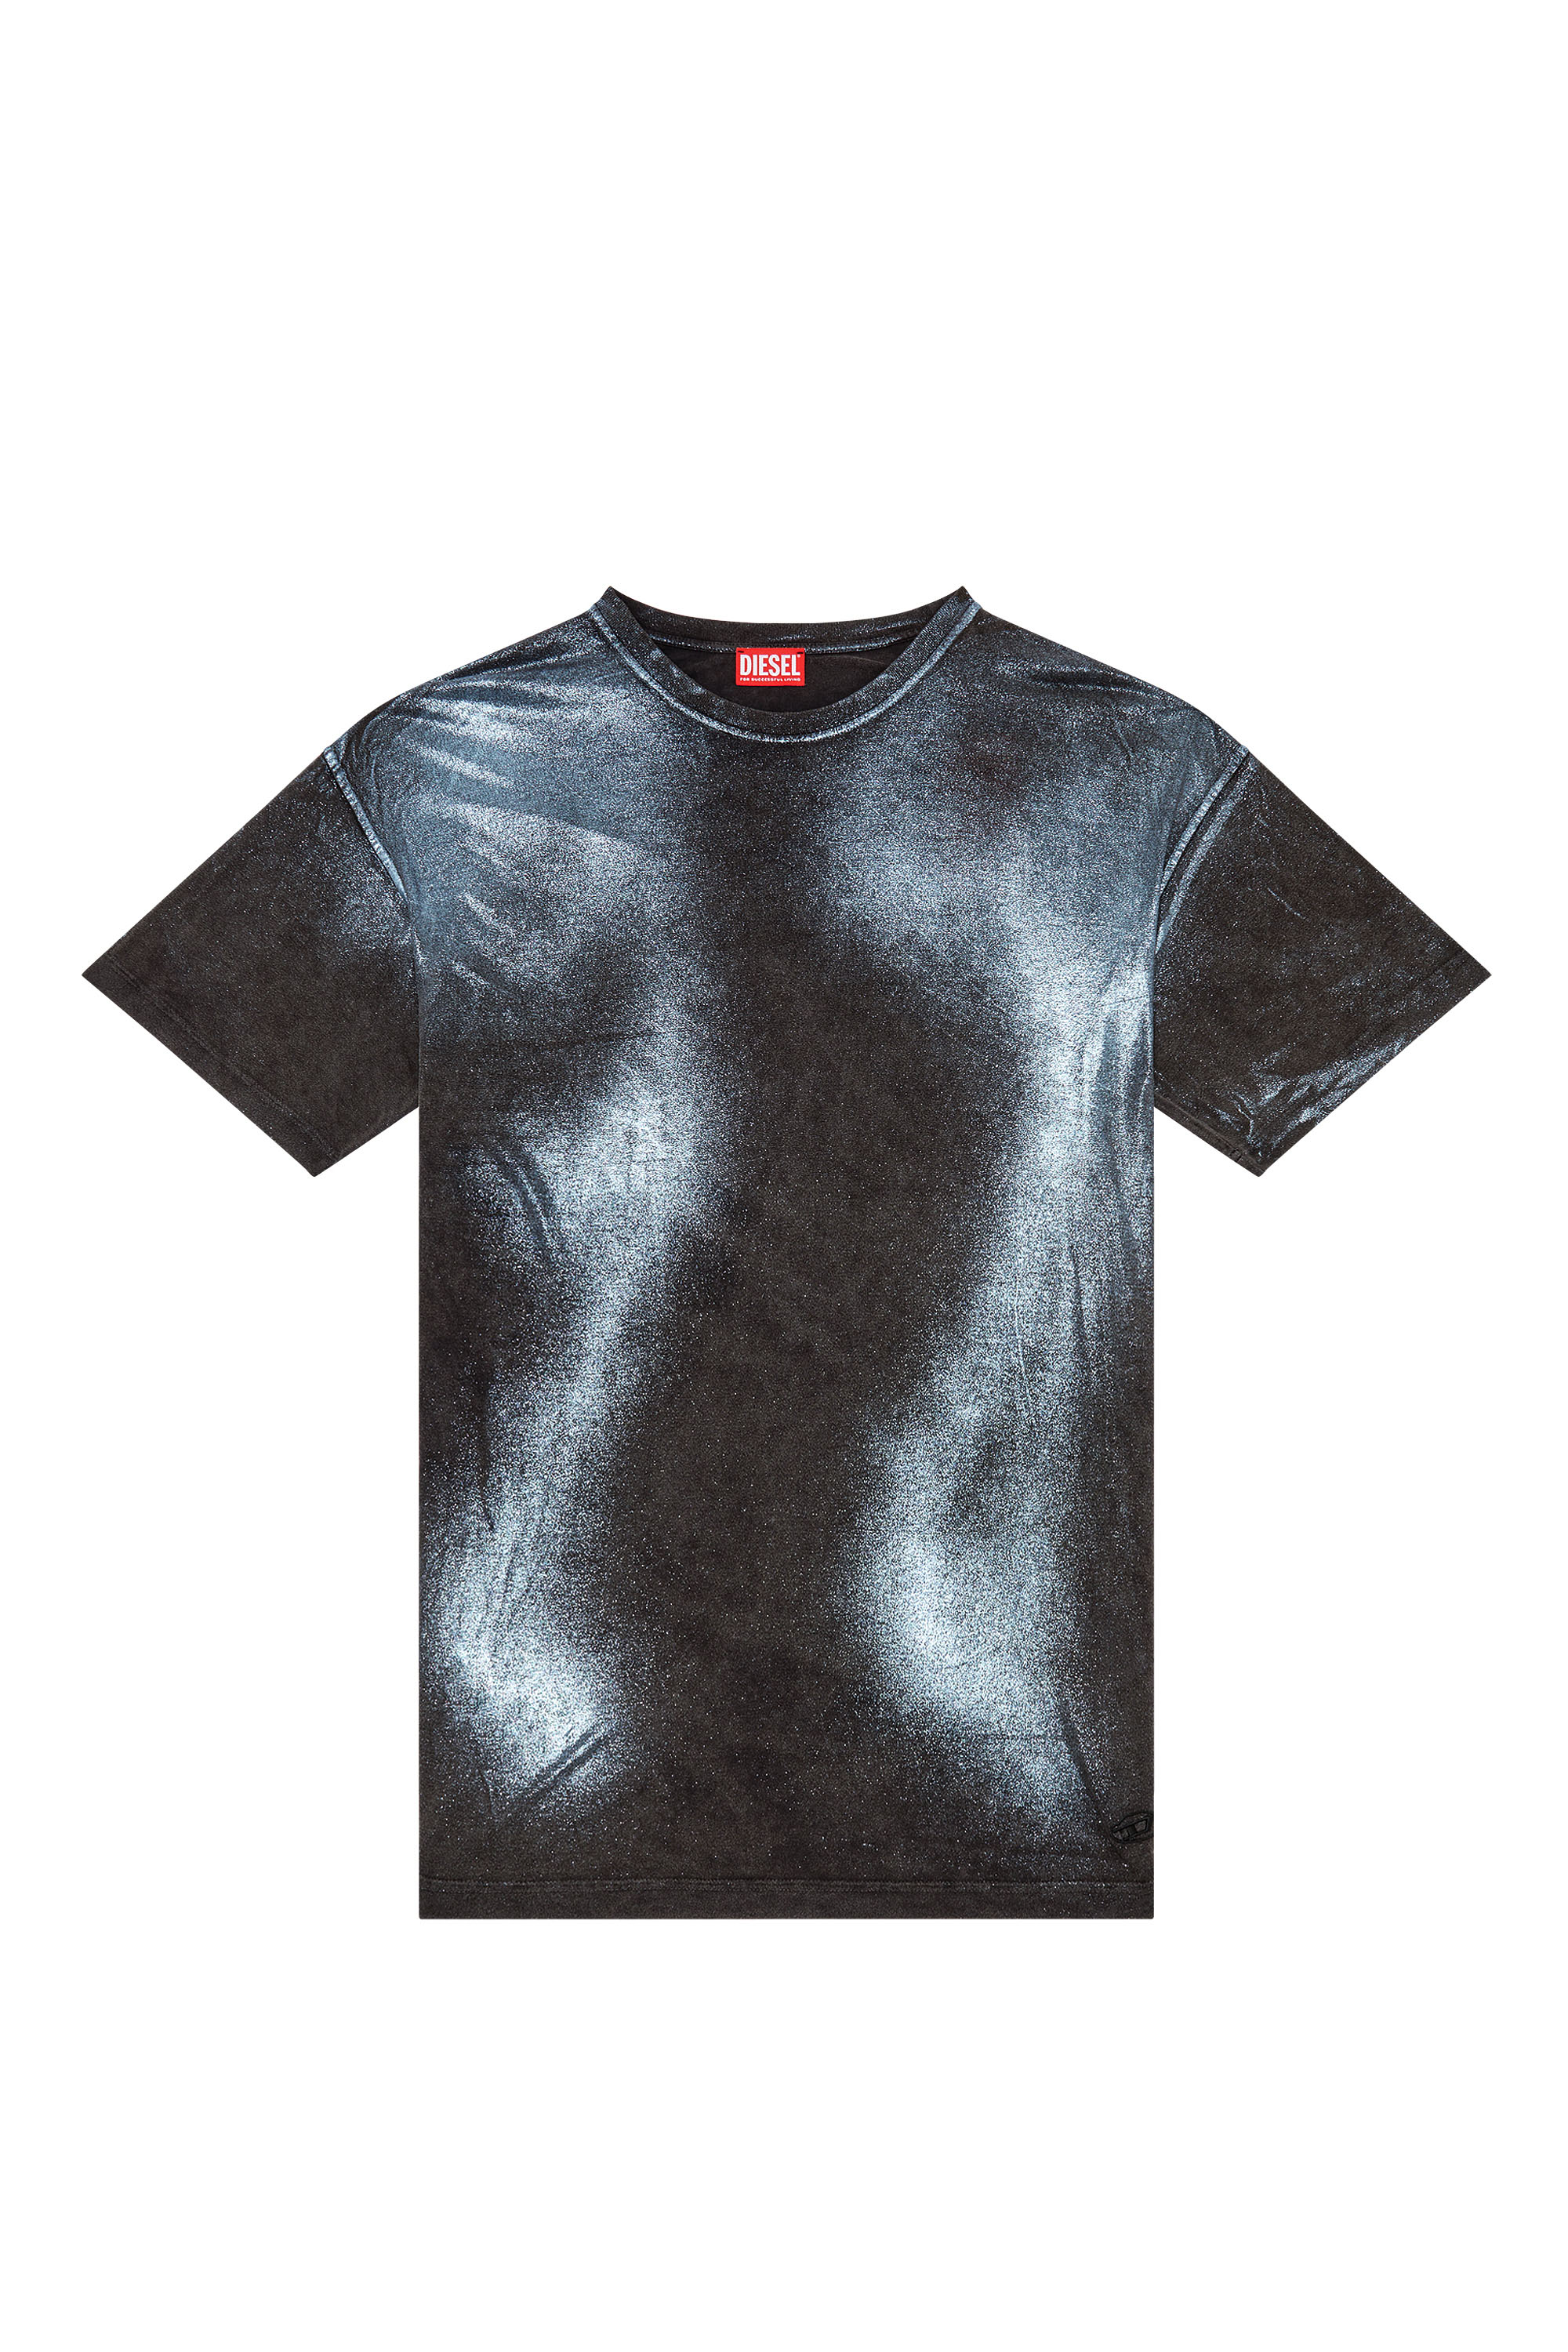 Diesel - T-BUXT, Homme T-shirt métallisé délavé in Polychrome - Image 3